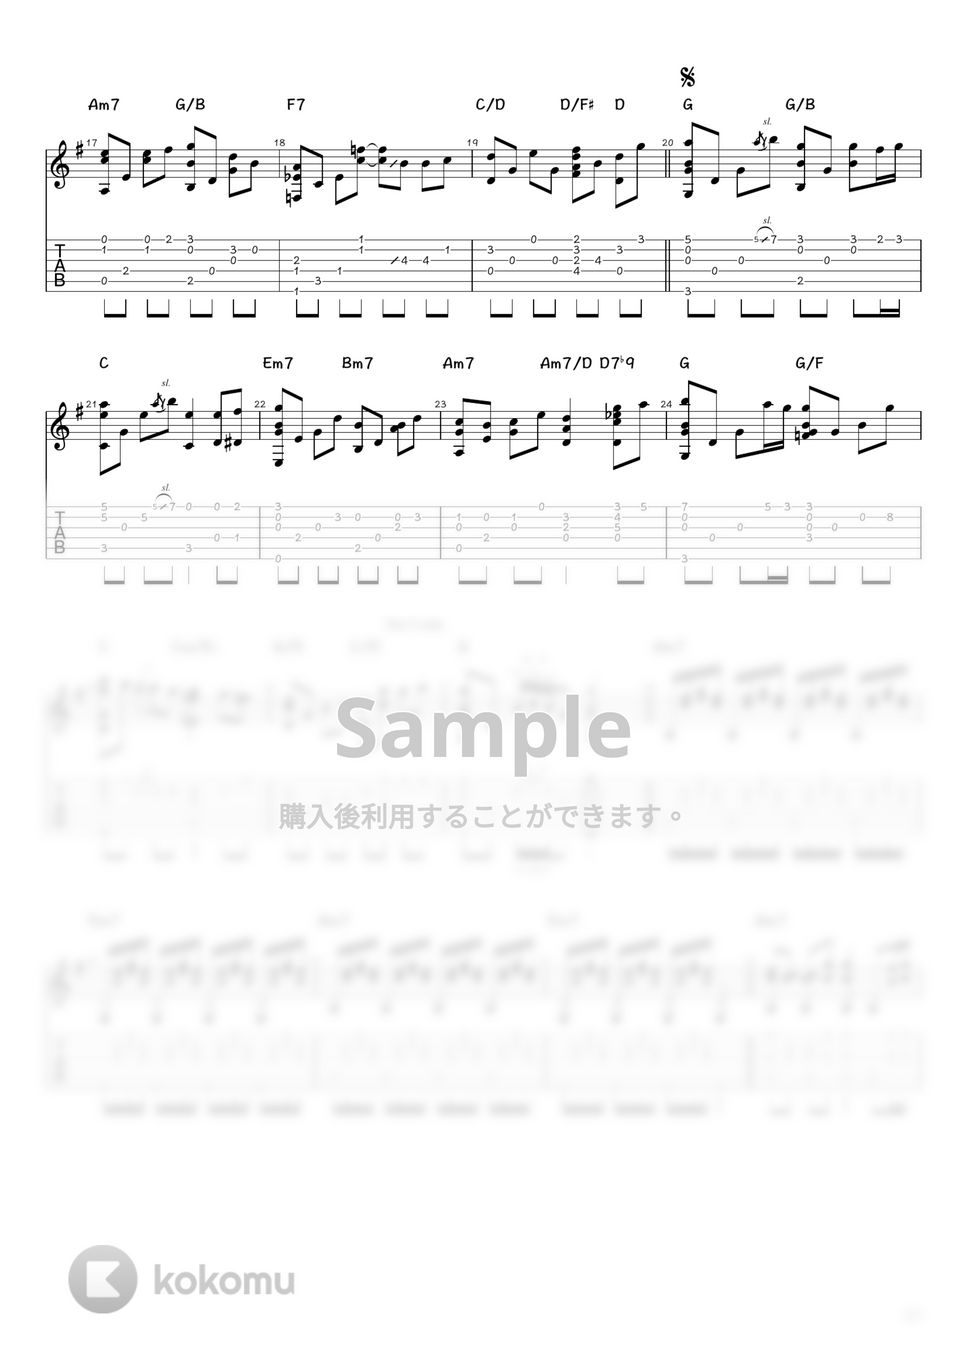 中孝介 - 夏夕空 (ソロギター / タブ譜) by 井上さとみ